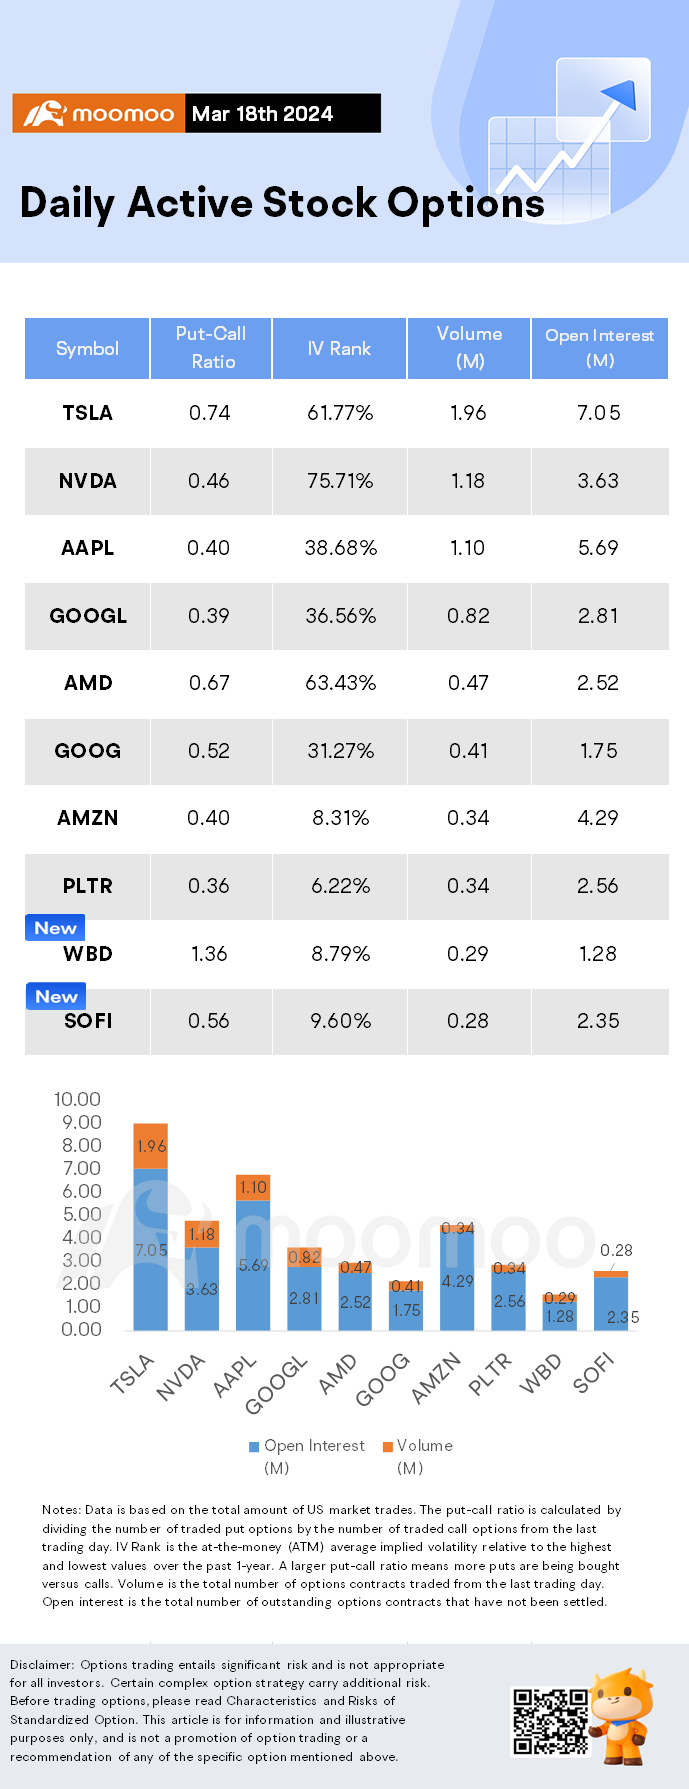 オプション市場の統計：テスラ投資家はModel Yの値上げのニュースで奨励され、株式が上昇し、オプションが人気に